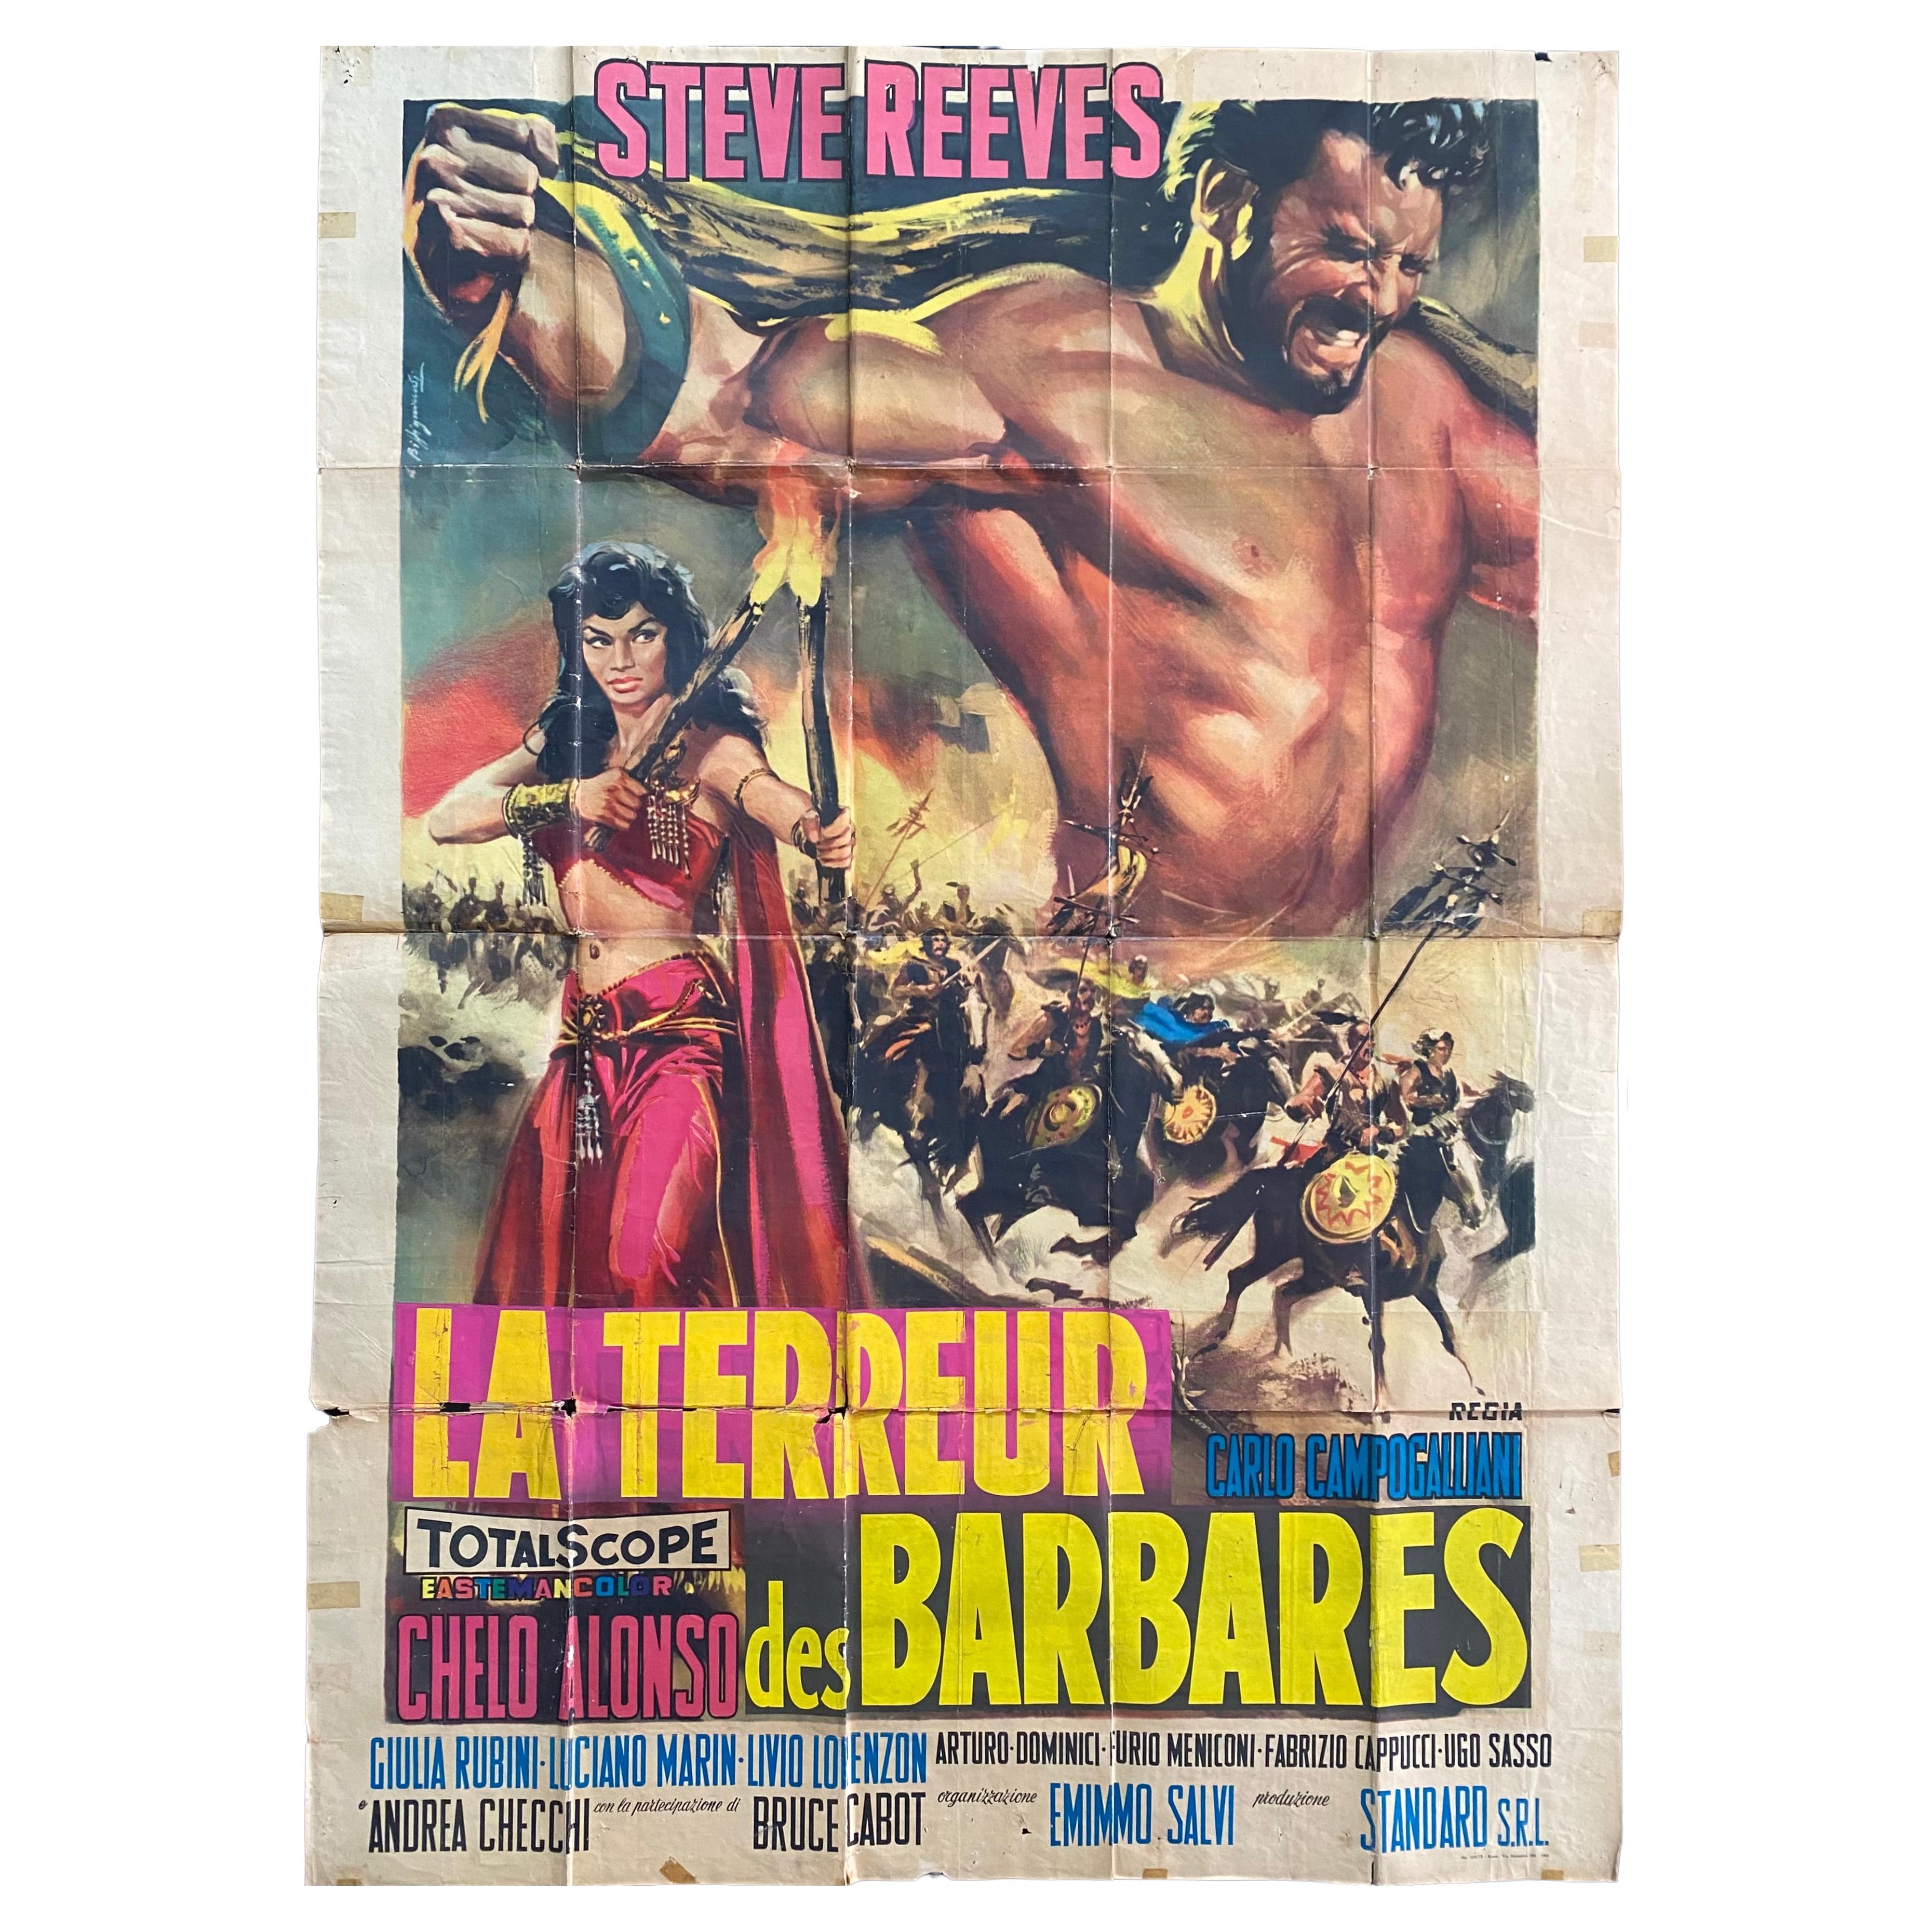 Filmplakat aus dem italienischen Abenteuerfilm Il terrore dei barbari aus dem Jahr 1959.